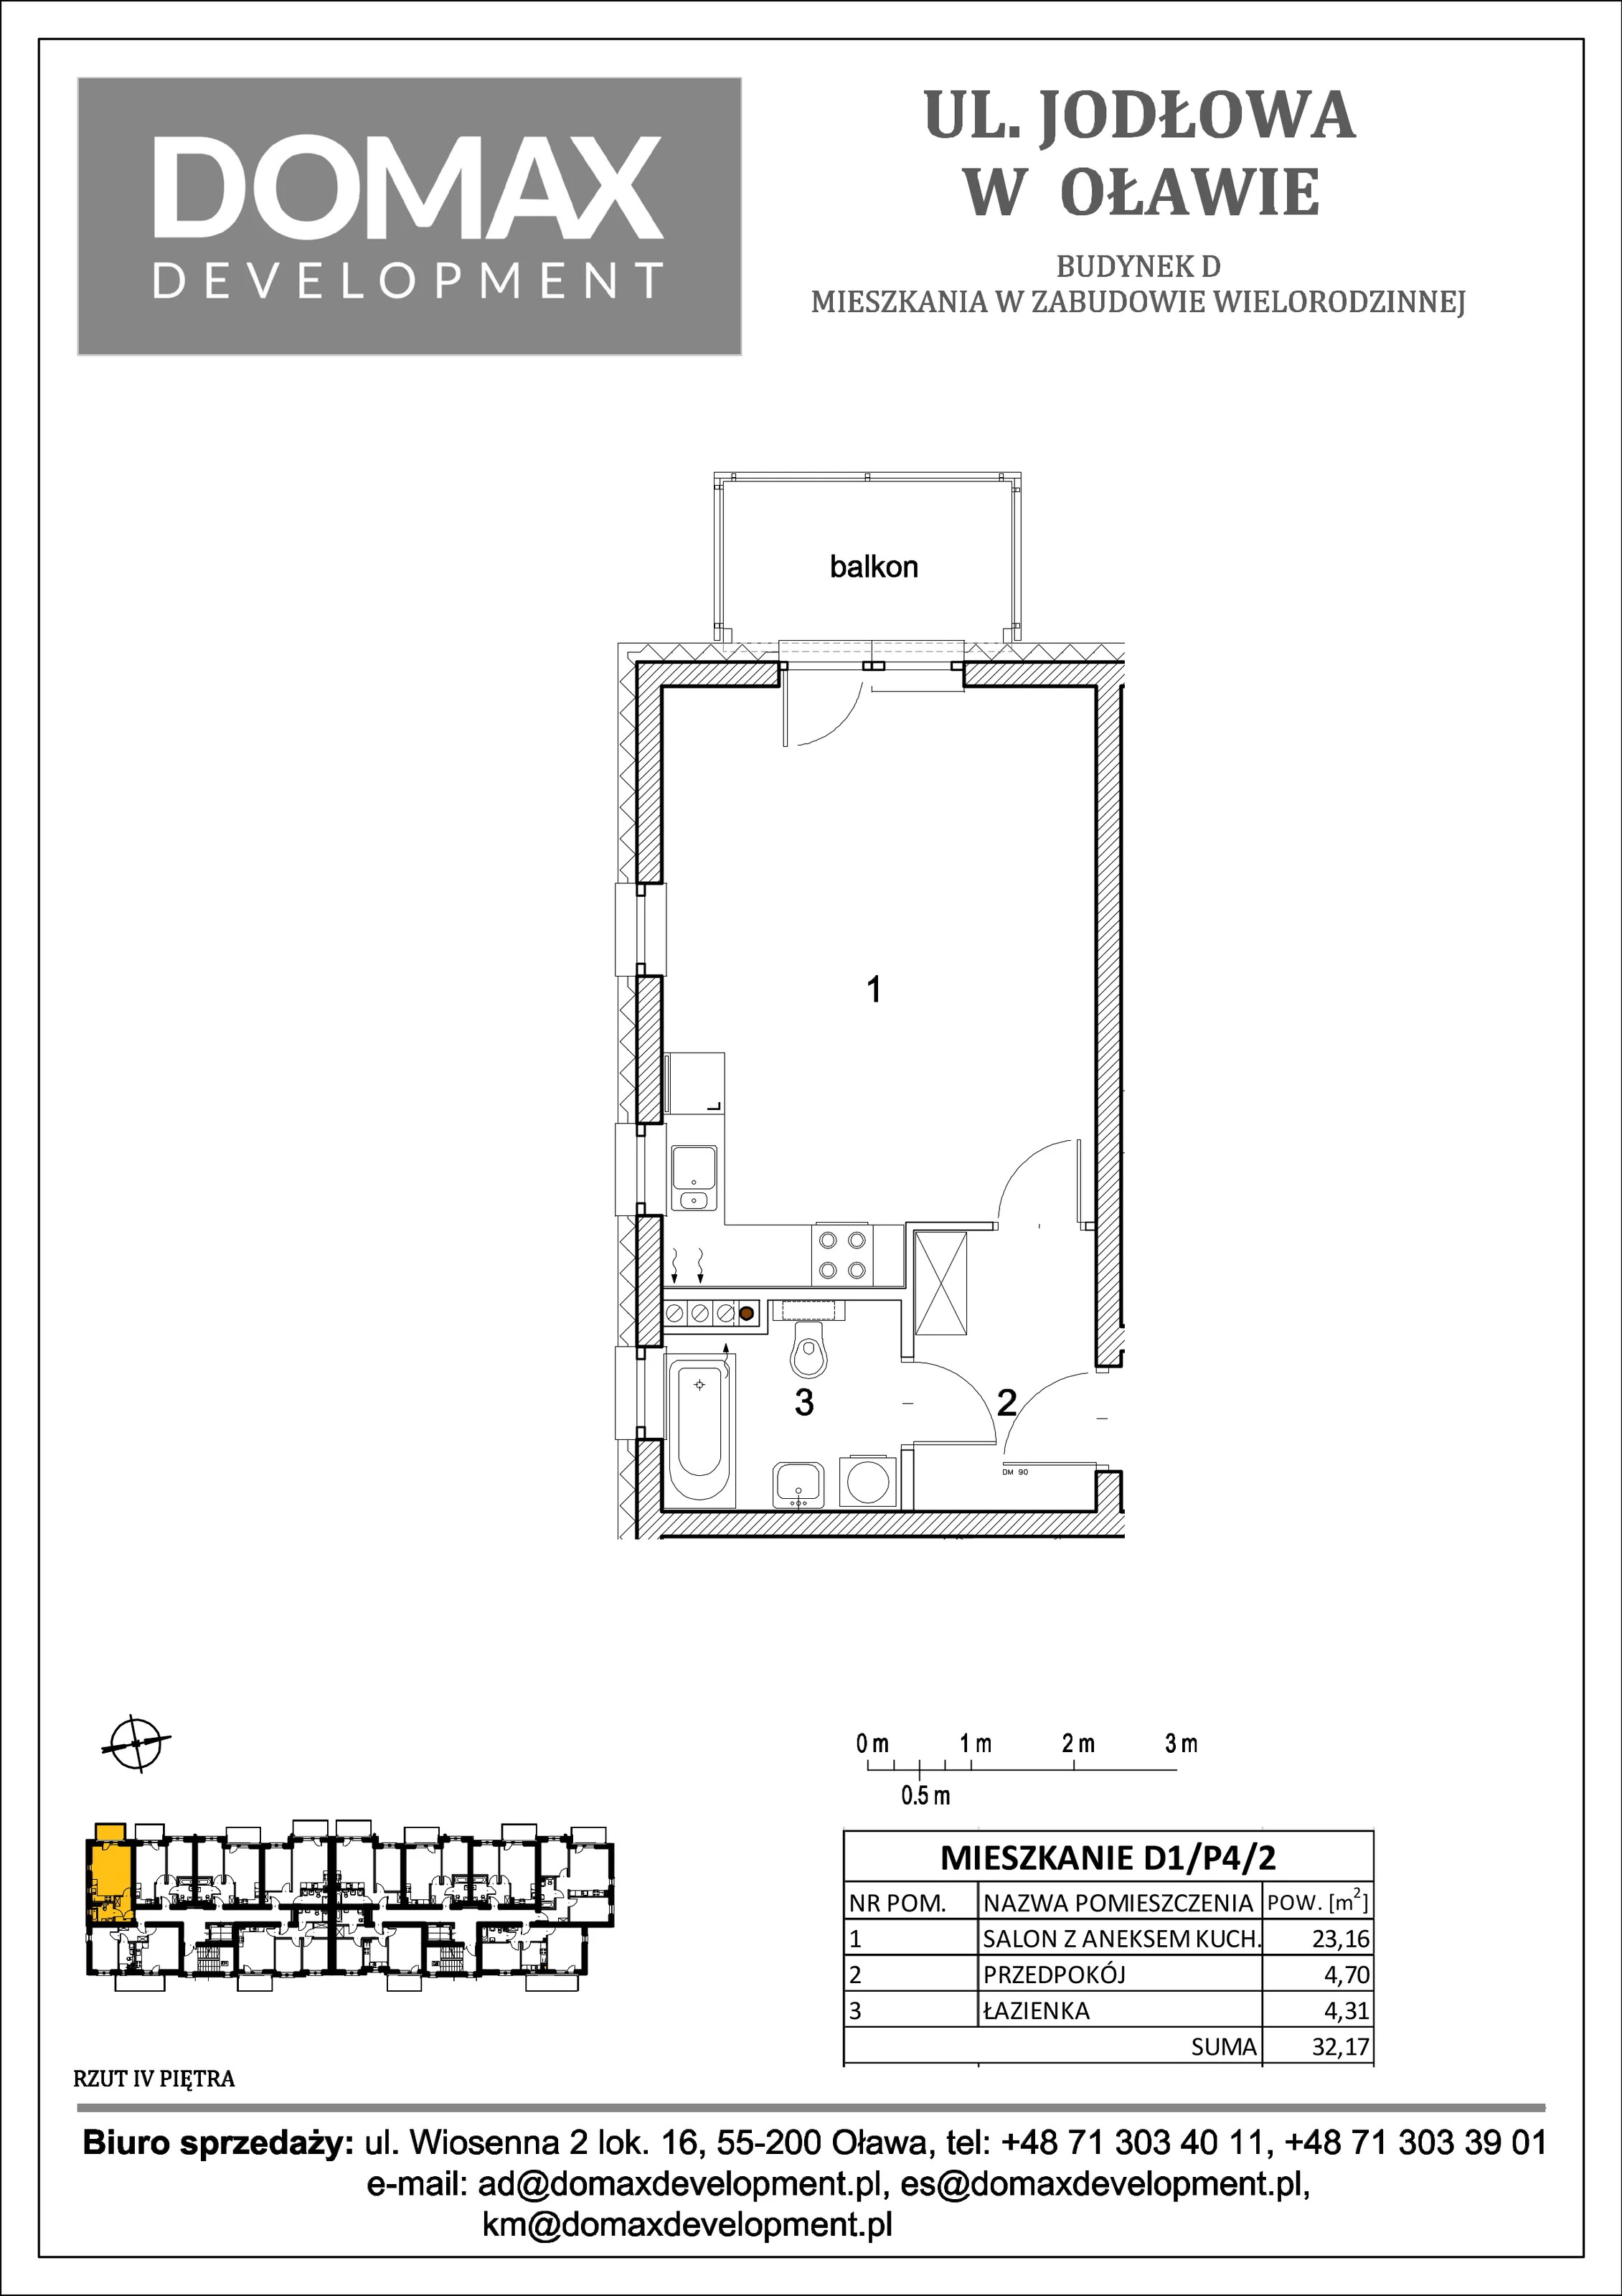 Mieszkanie 32,17 m², piętro 4, oferta nr D1/P4/2, Osiedle Jodłowa etap II, Oława, ul. Jodłowa